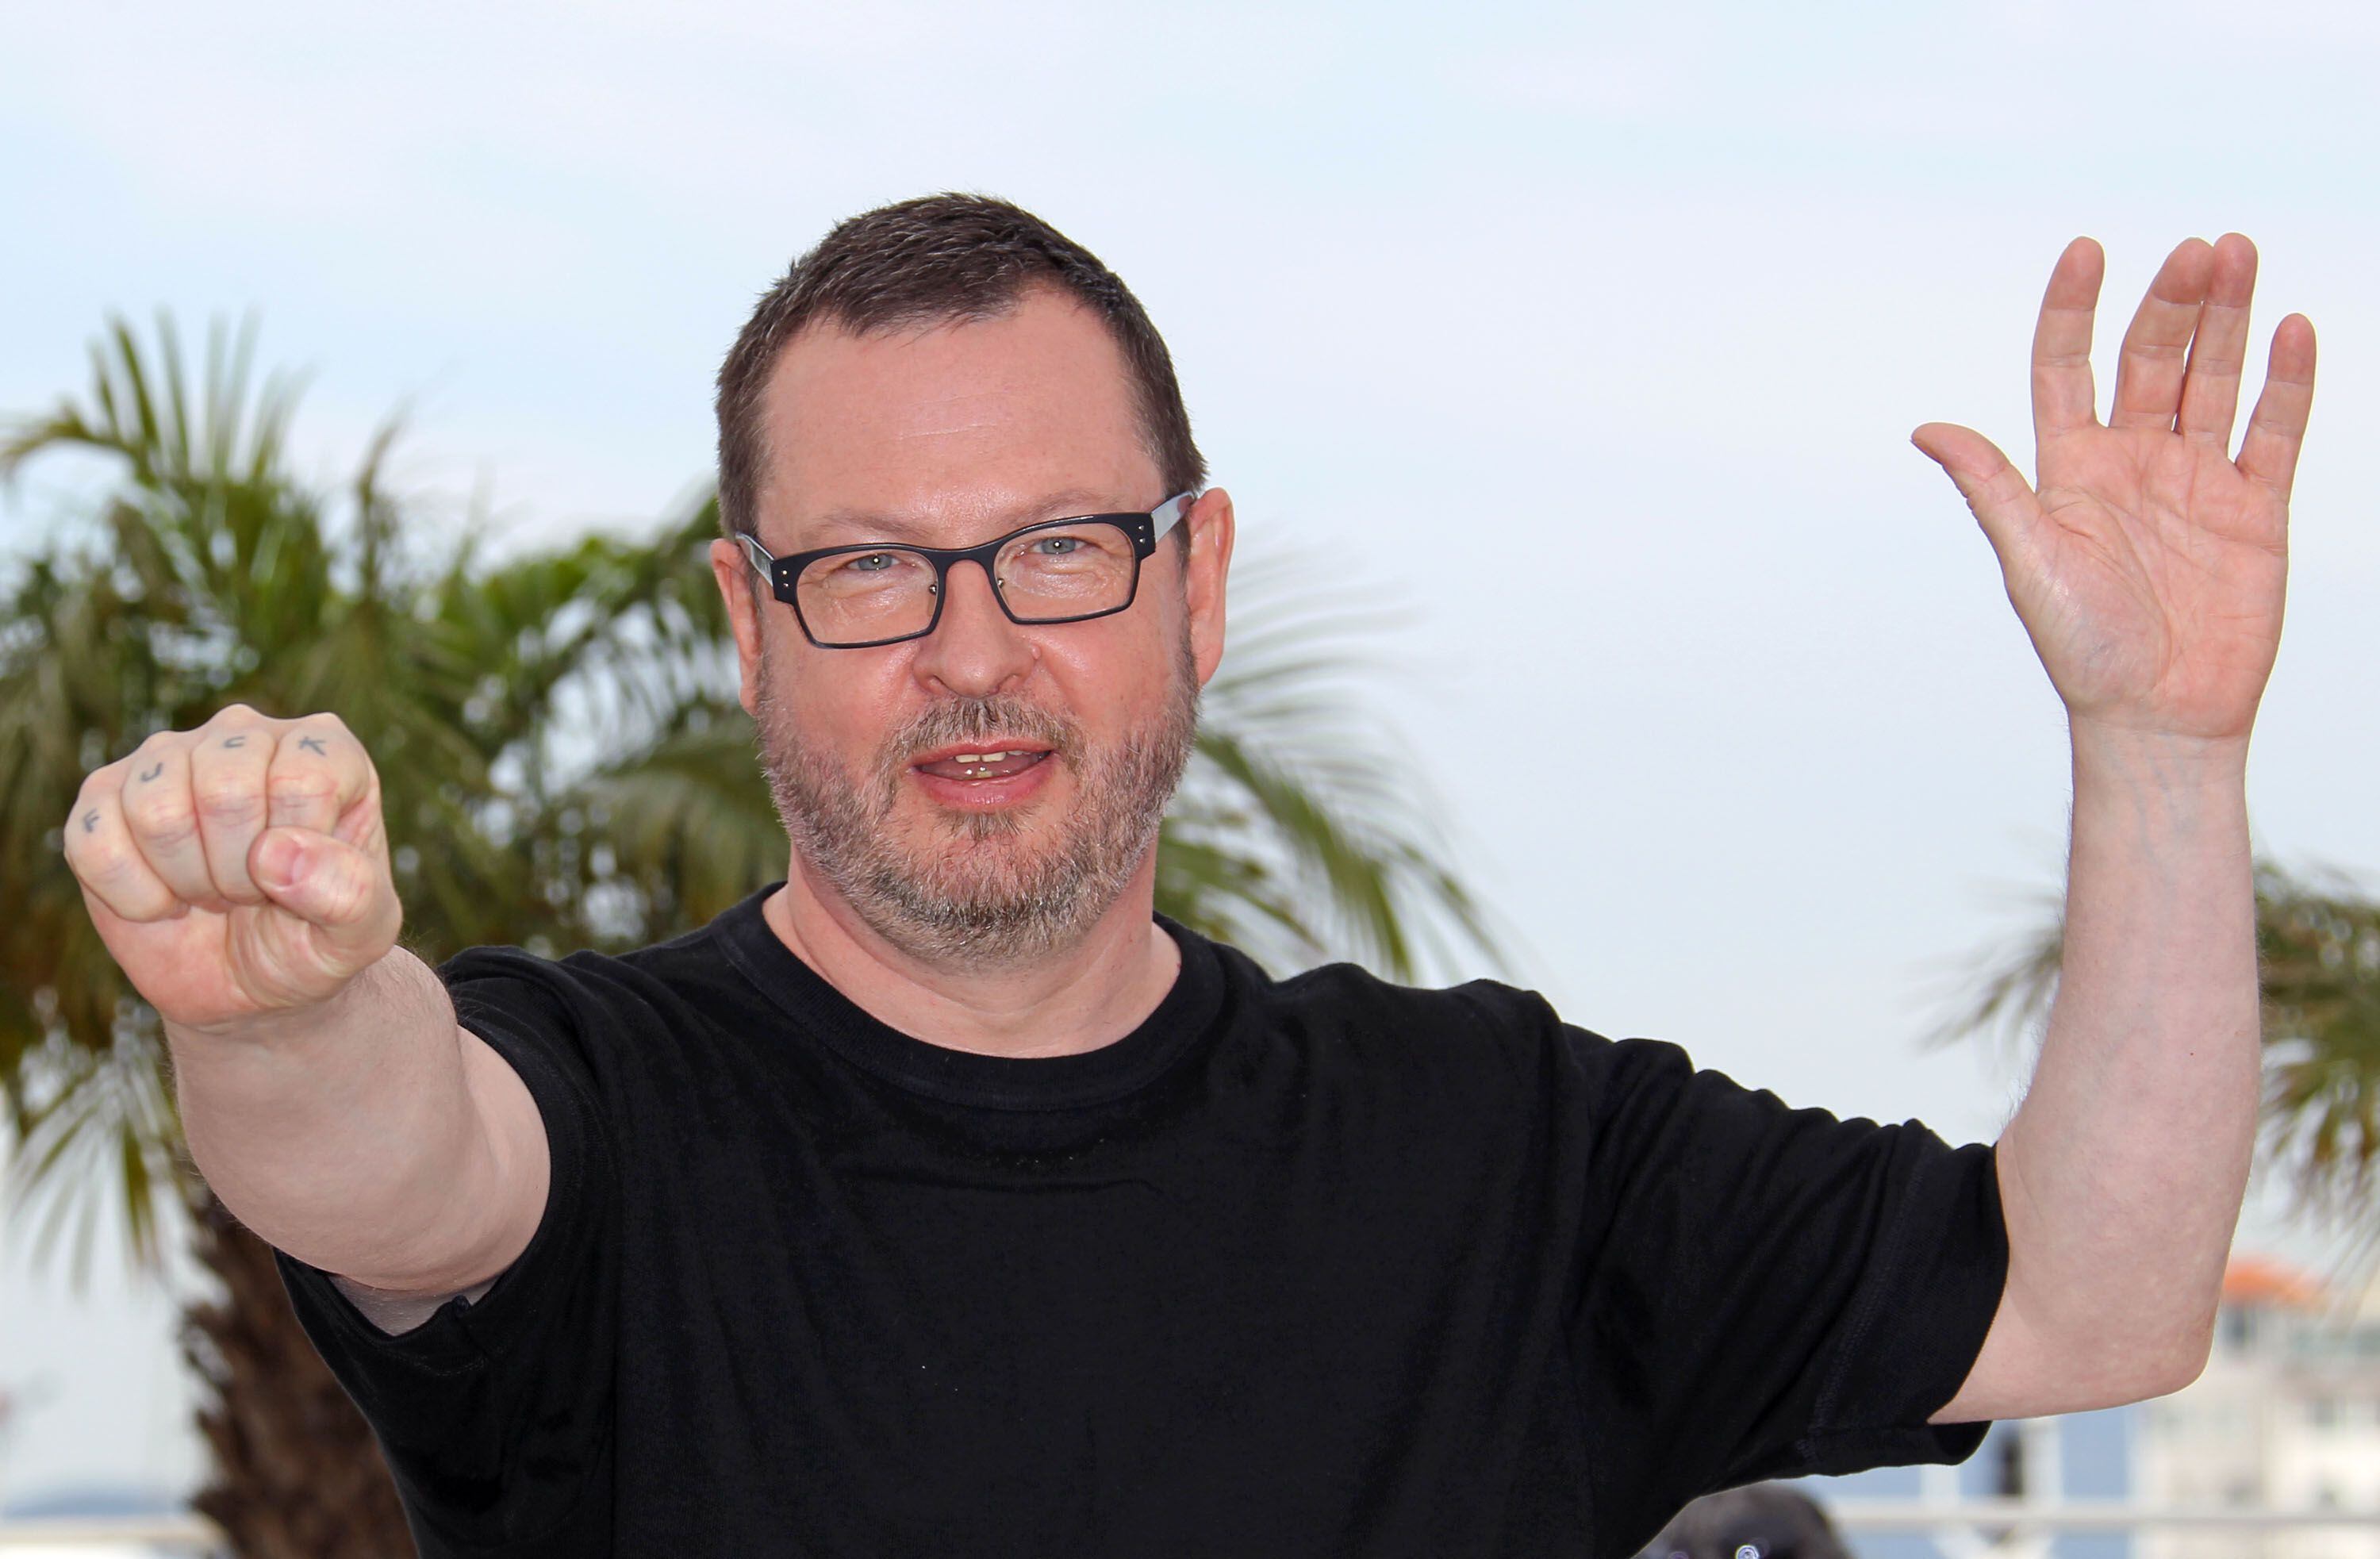 El director danés Lars von Trier en 2011 durante la 64ª edición del Festival de Cannes.